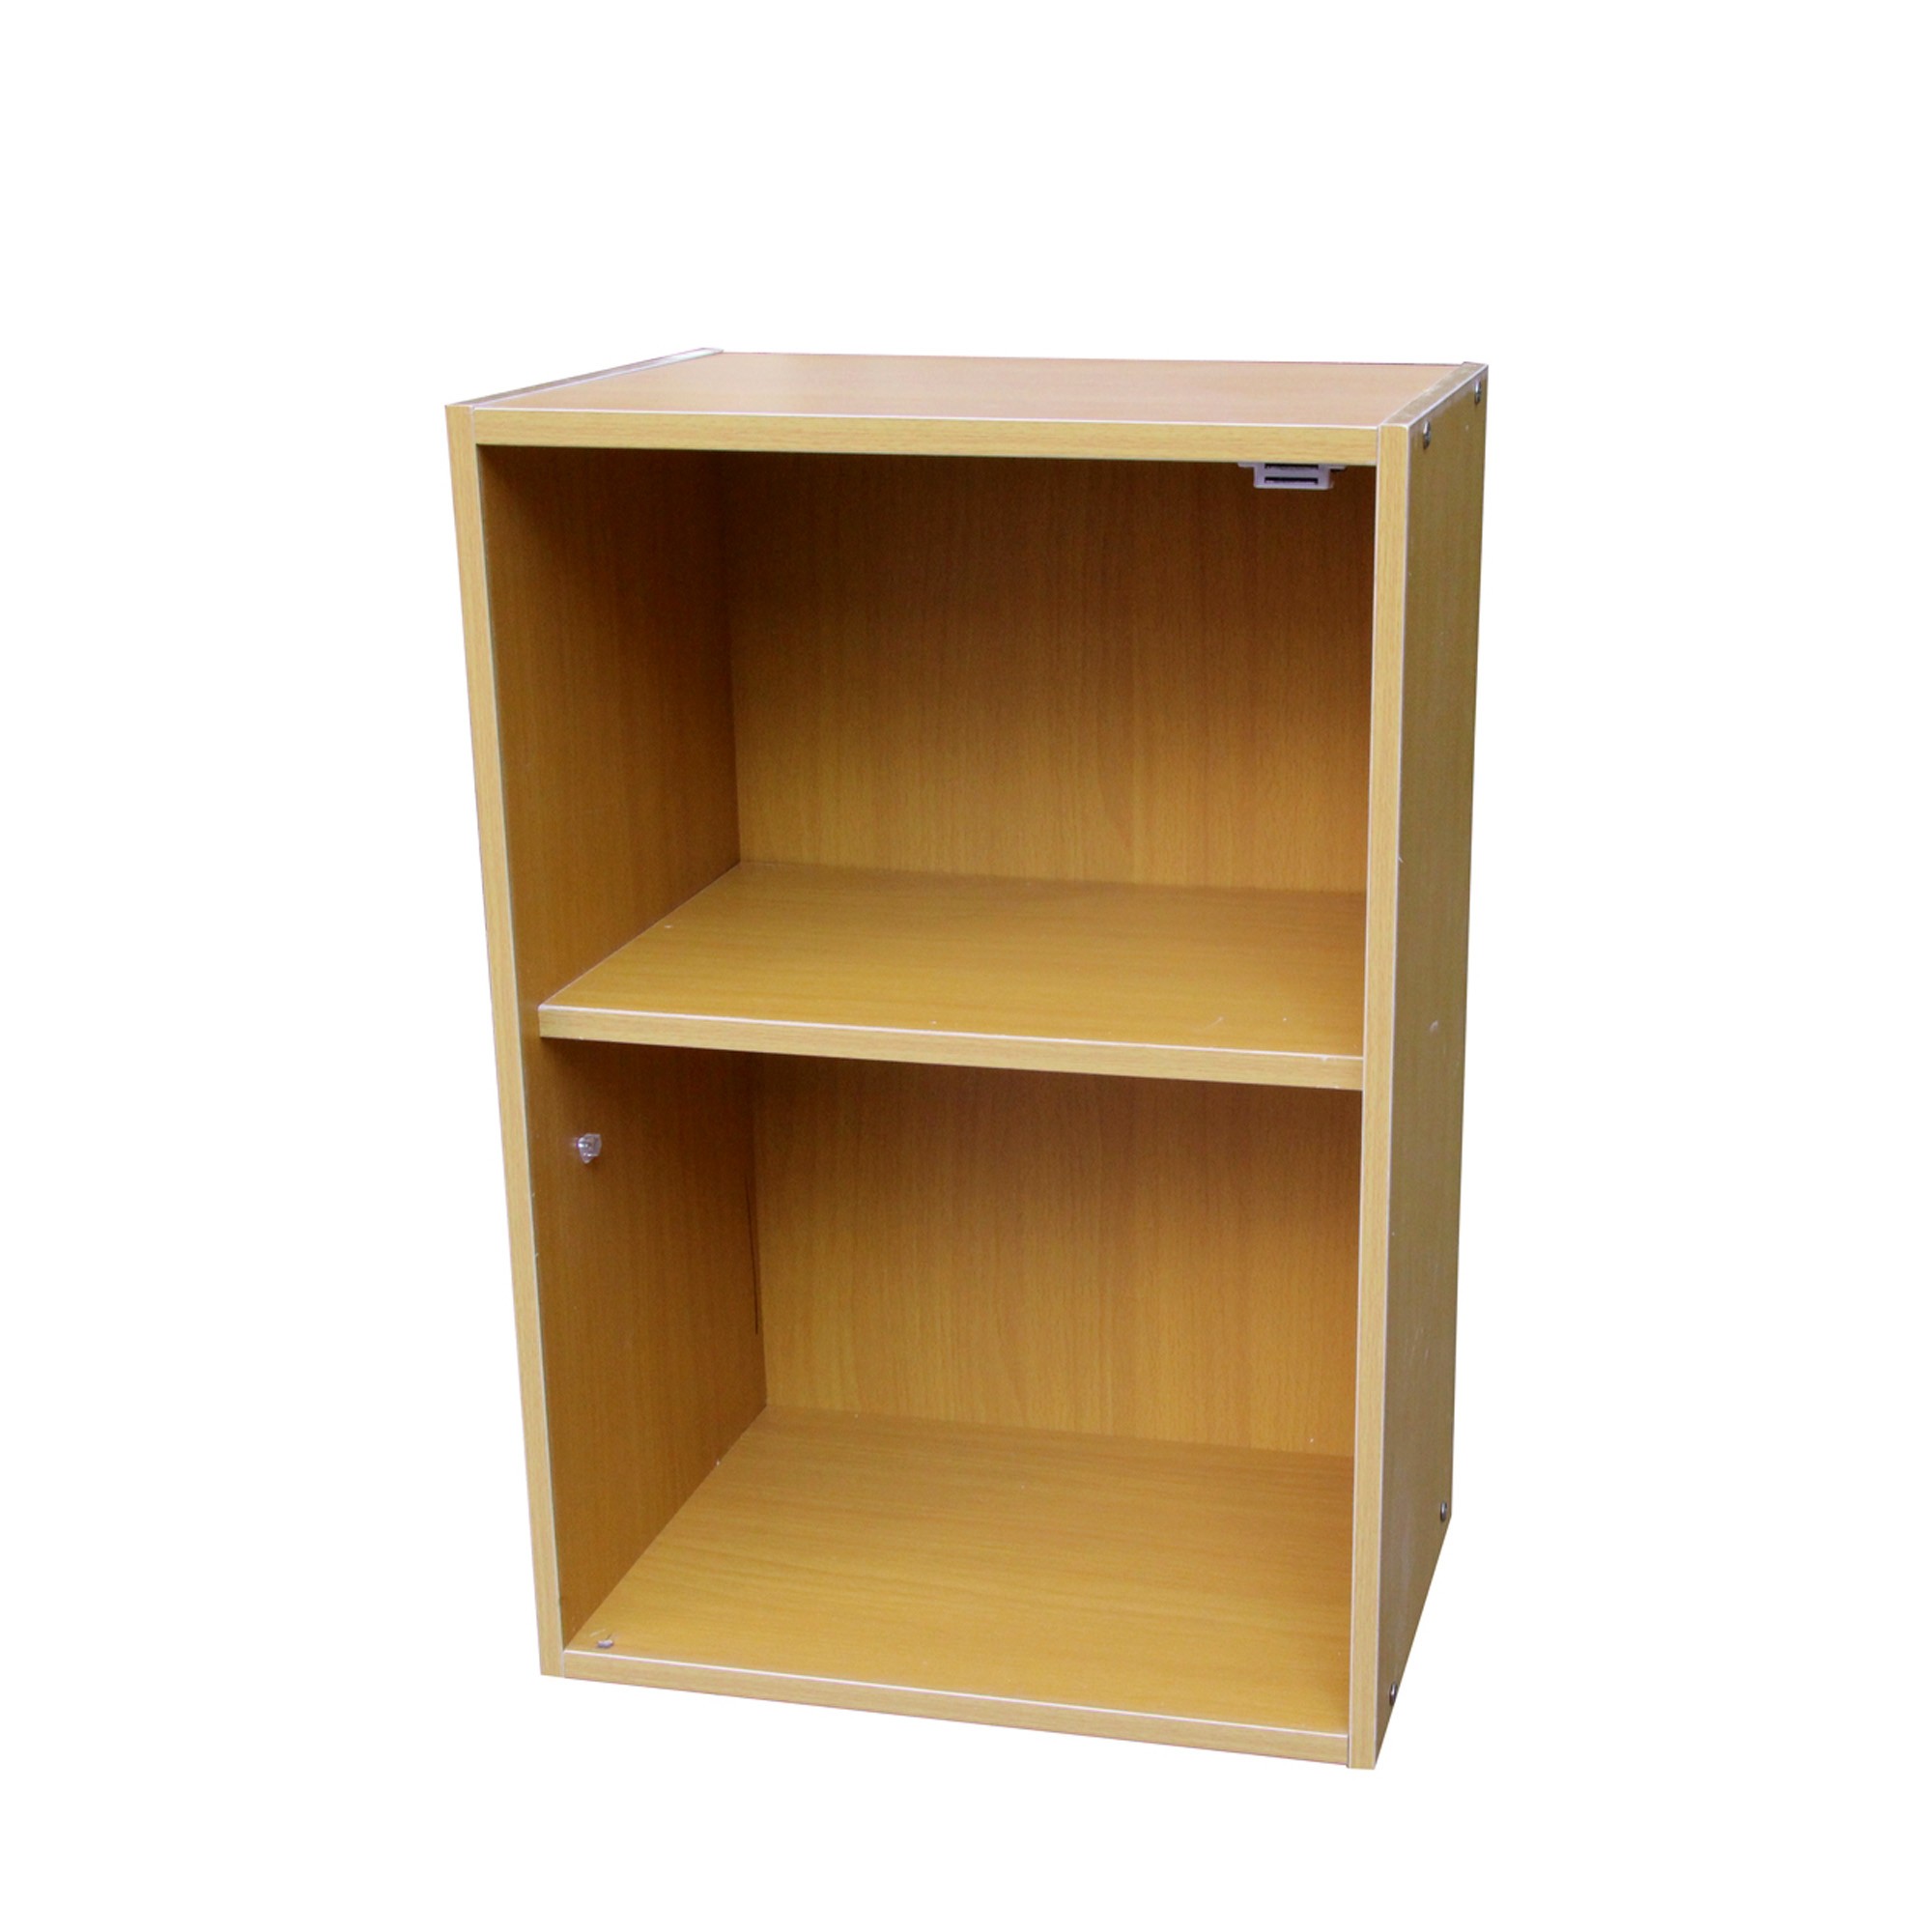 Standard Natural Finish Adjustable Book Shelf